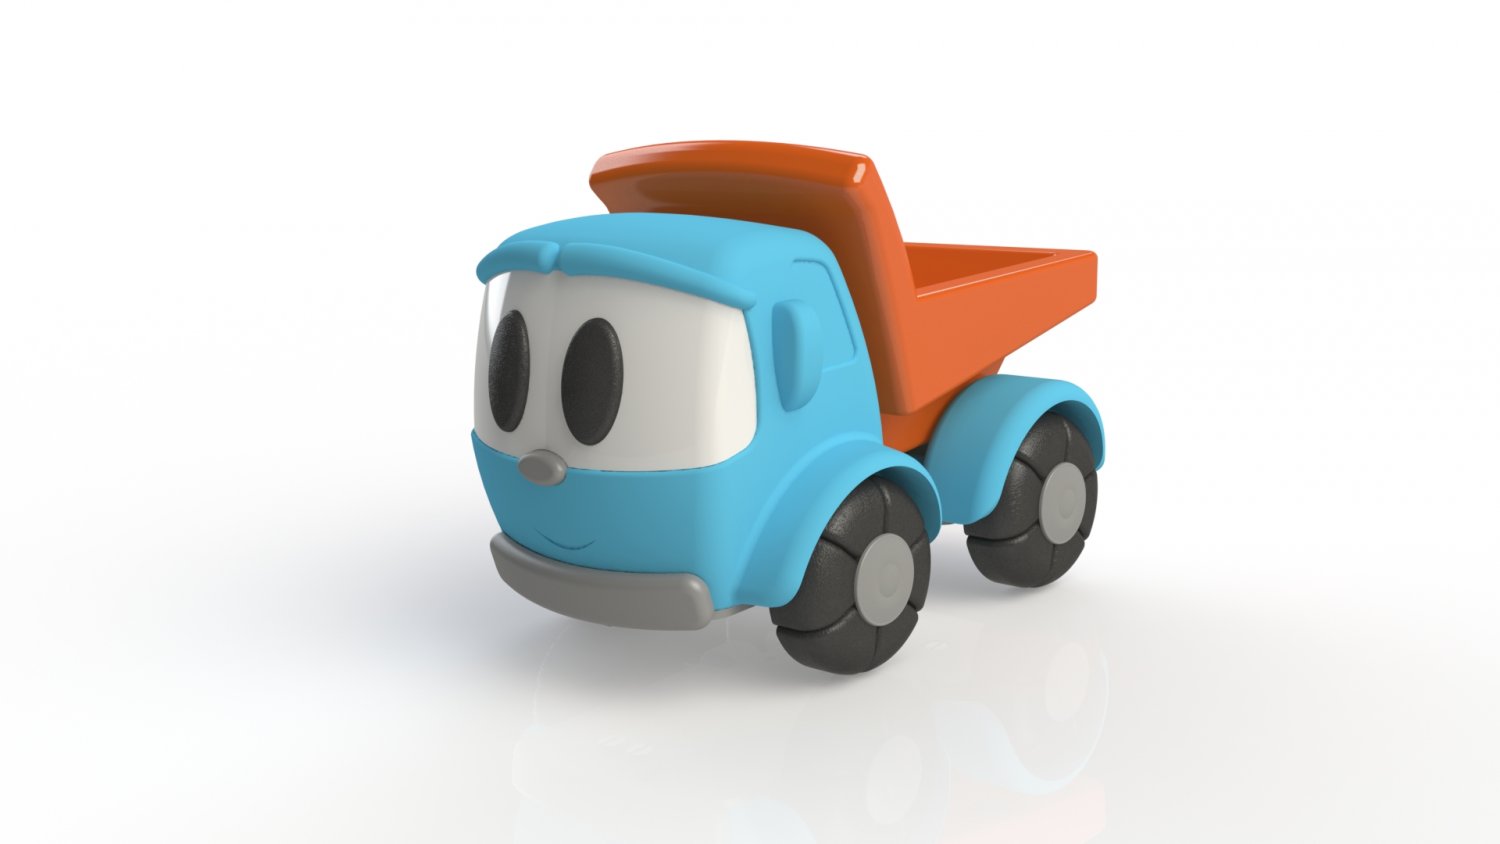 Brinquedo Léo o Caminhão Curioso Decoração impressão 3D